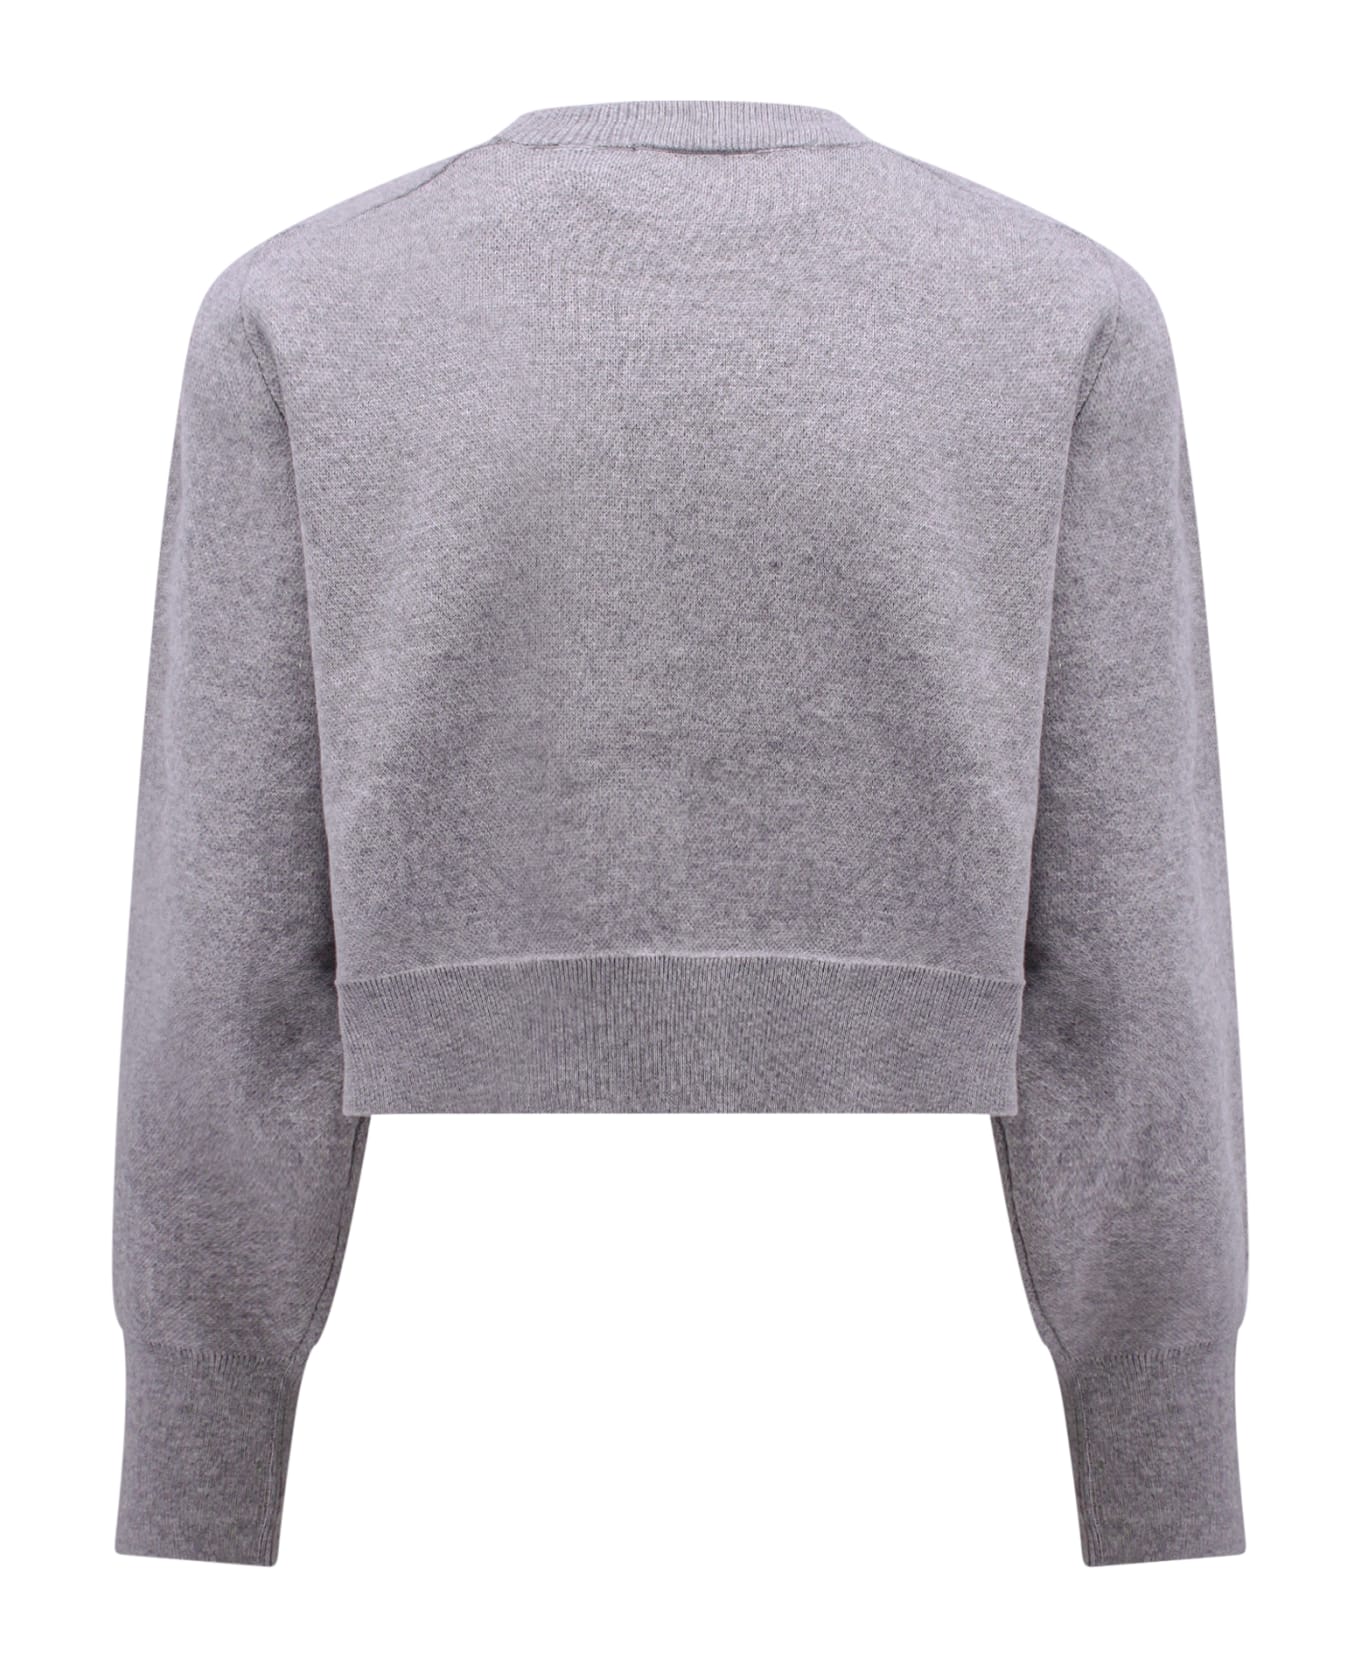 Rotate by Birger Christensen Sweater - Grey